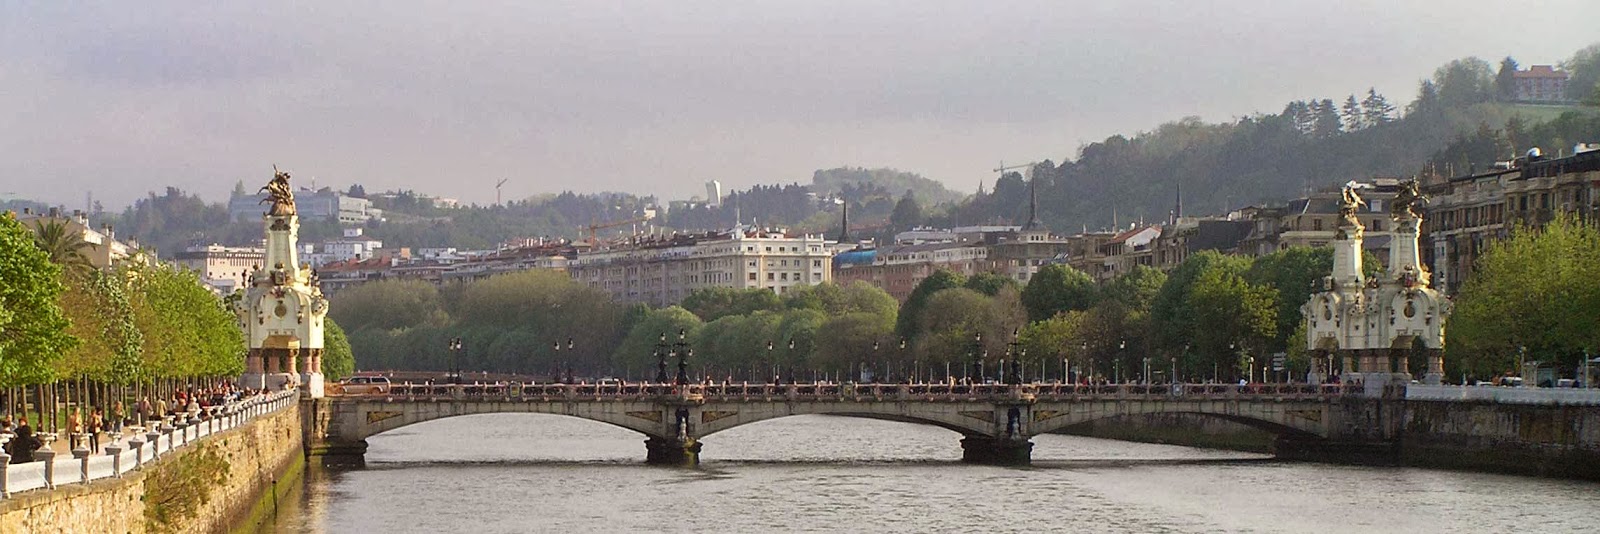 Puente de María Cristina. San Sebastián.